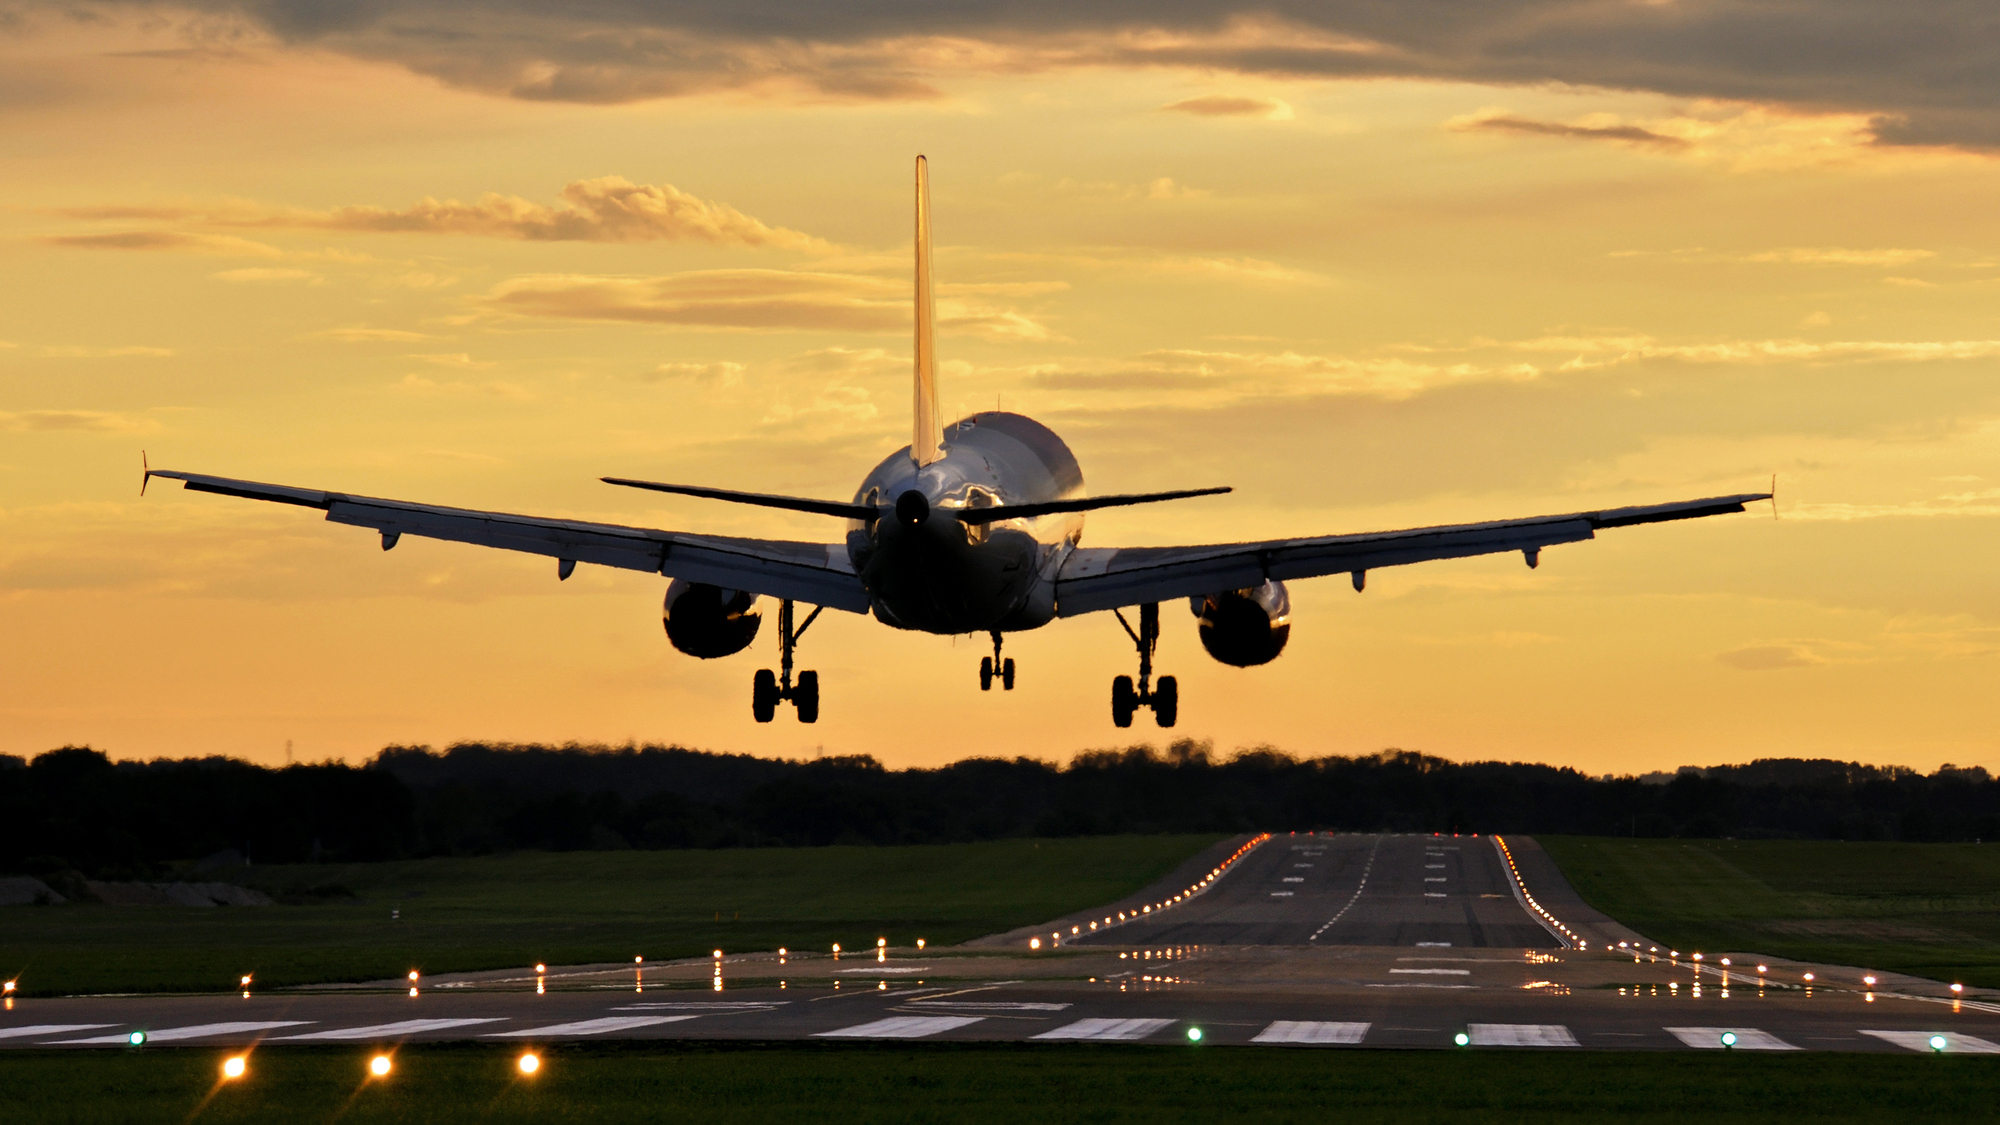 Airplane landing on runway at sunset